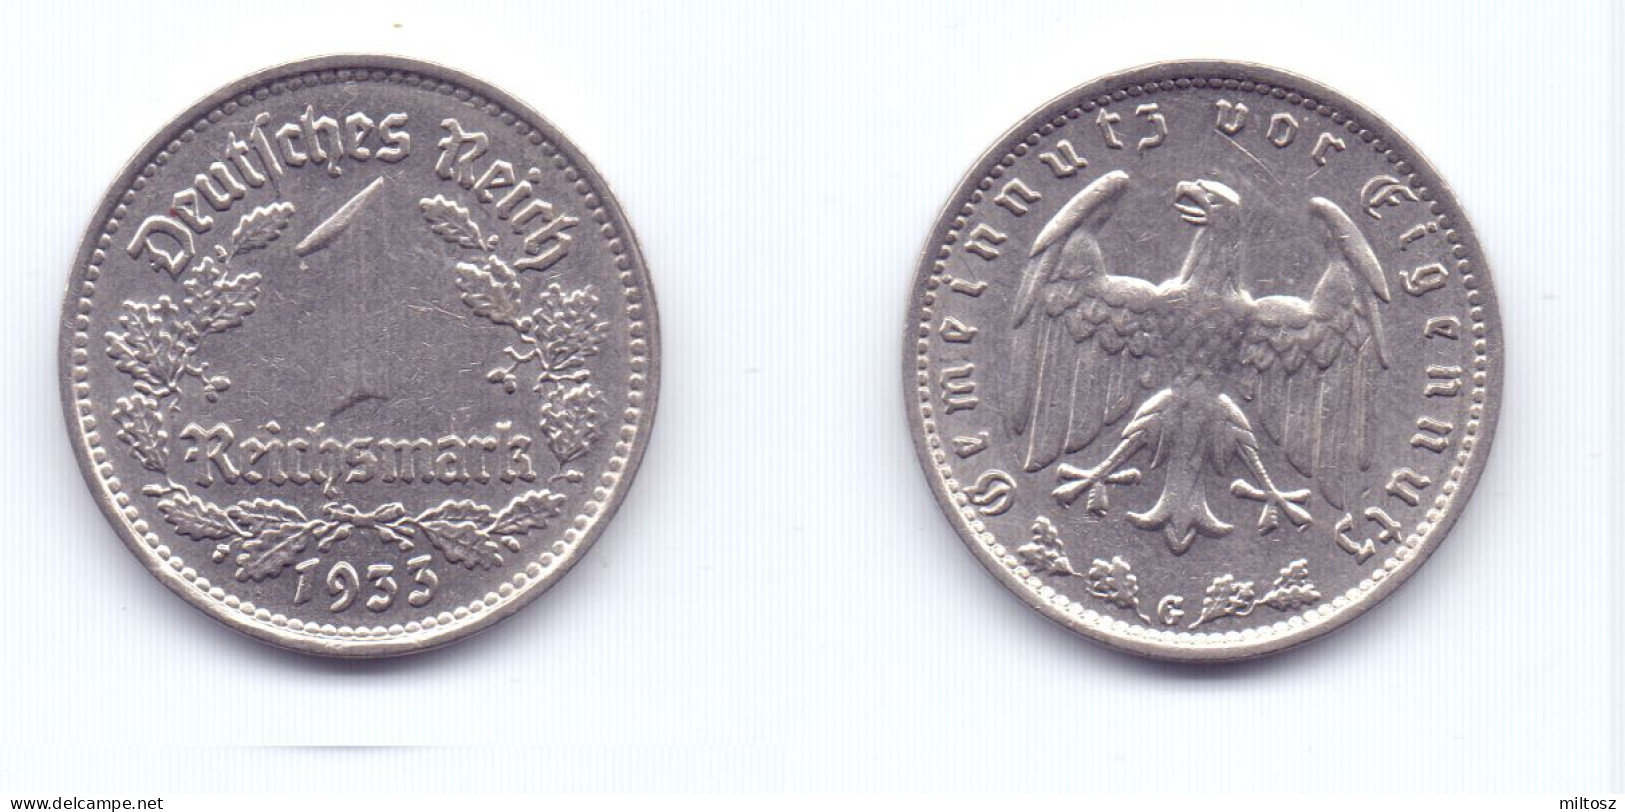 Germany 1 Reichsmark 1933 G - 1 Reichsmark